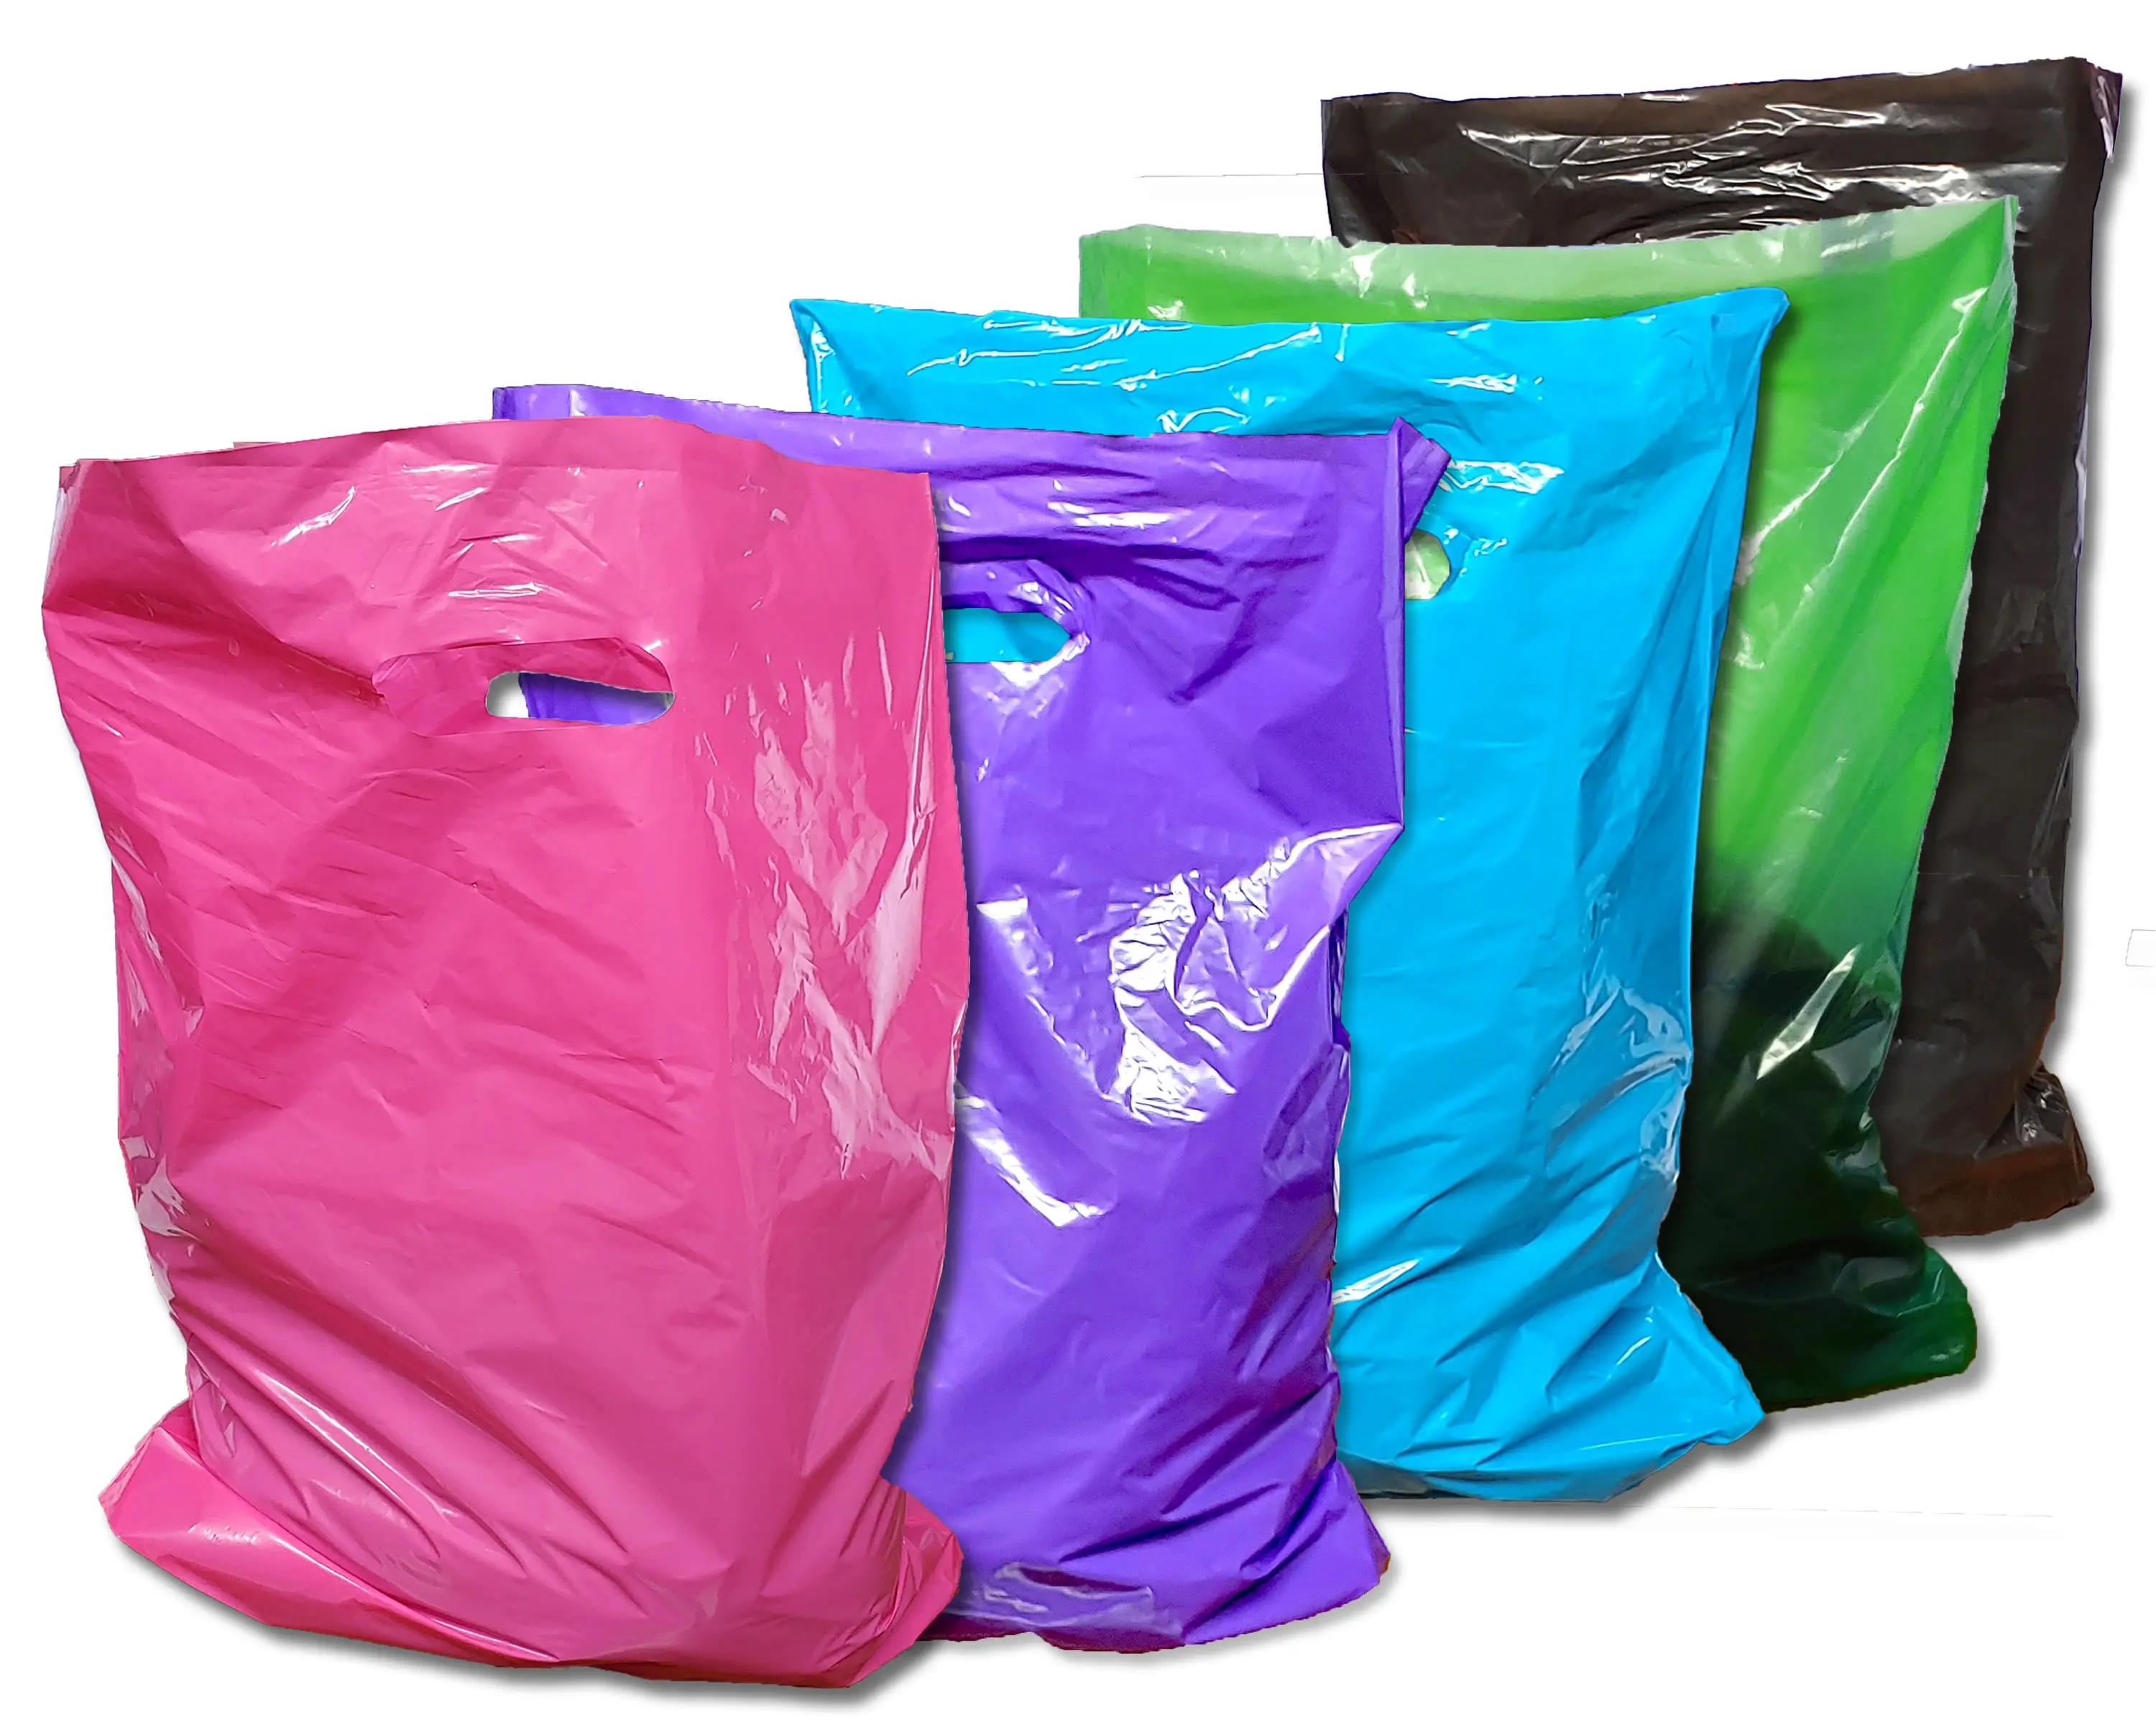 로고 재활용 티셔츠 가방 다이 컷 핸들 식료품 비즈니스 프로모션 쇼핑 가방 도매 맞춤형 비닐 봉지